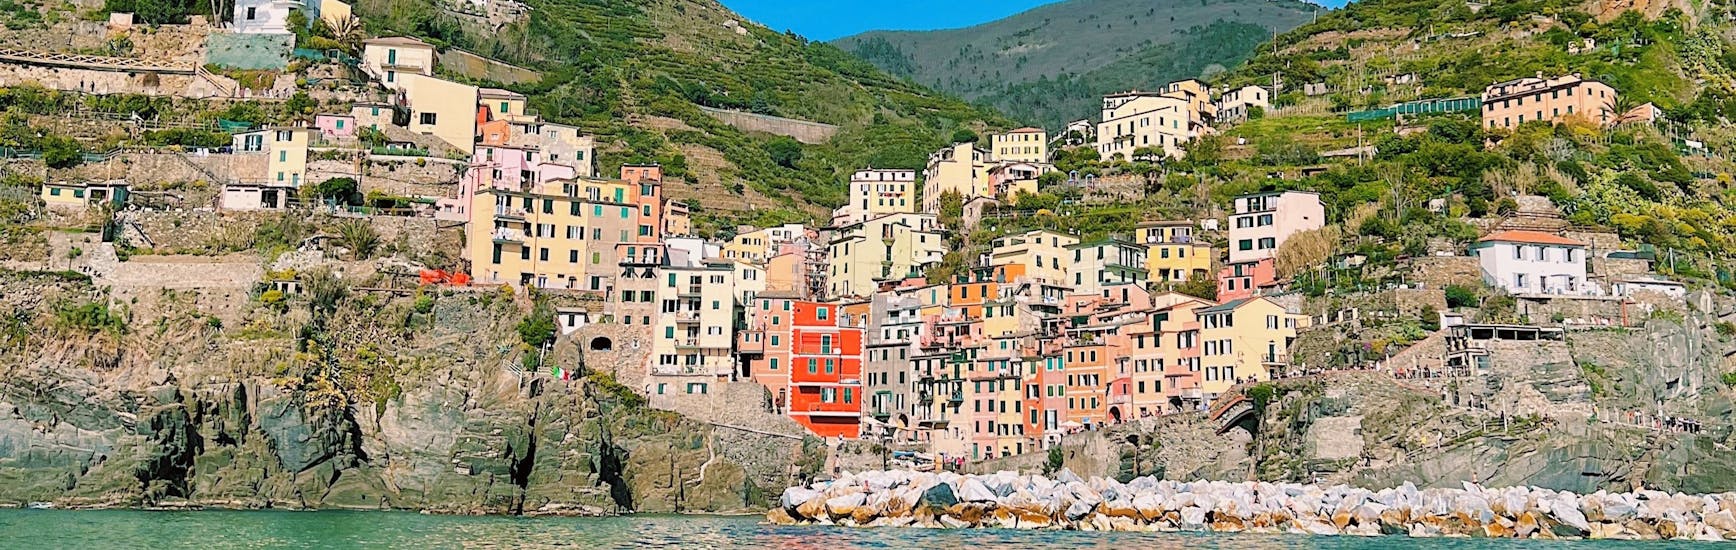 Het dorp Riomaggiore gezien vanaf de zee tijdens de zeiltocht van La Spezia naar Cinque Terre met Lunch met Velagiovane.